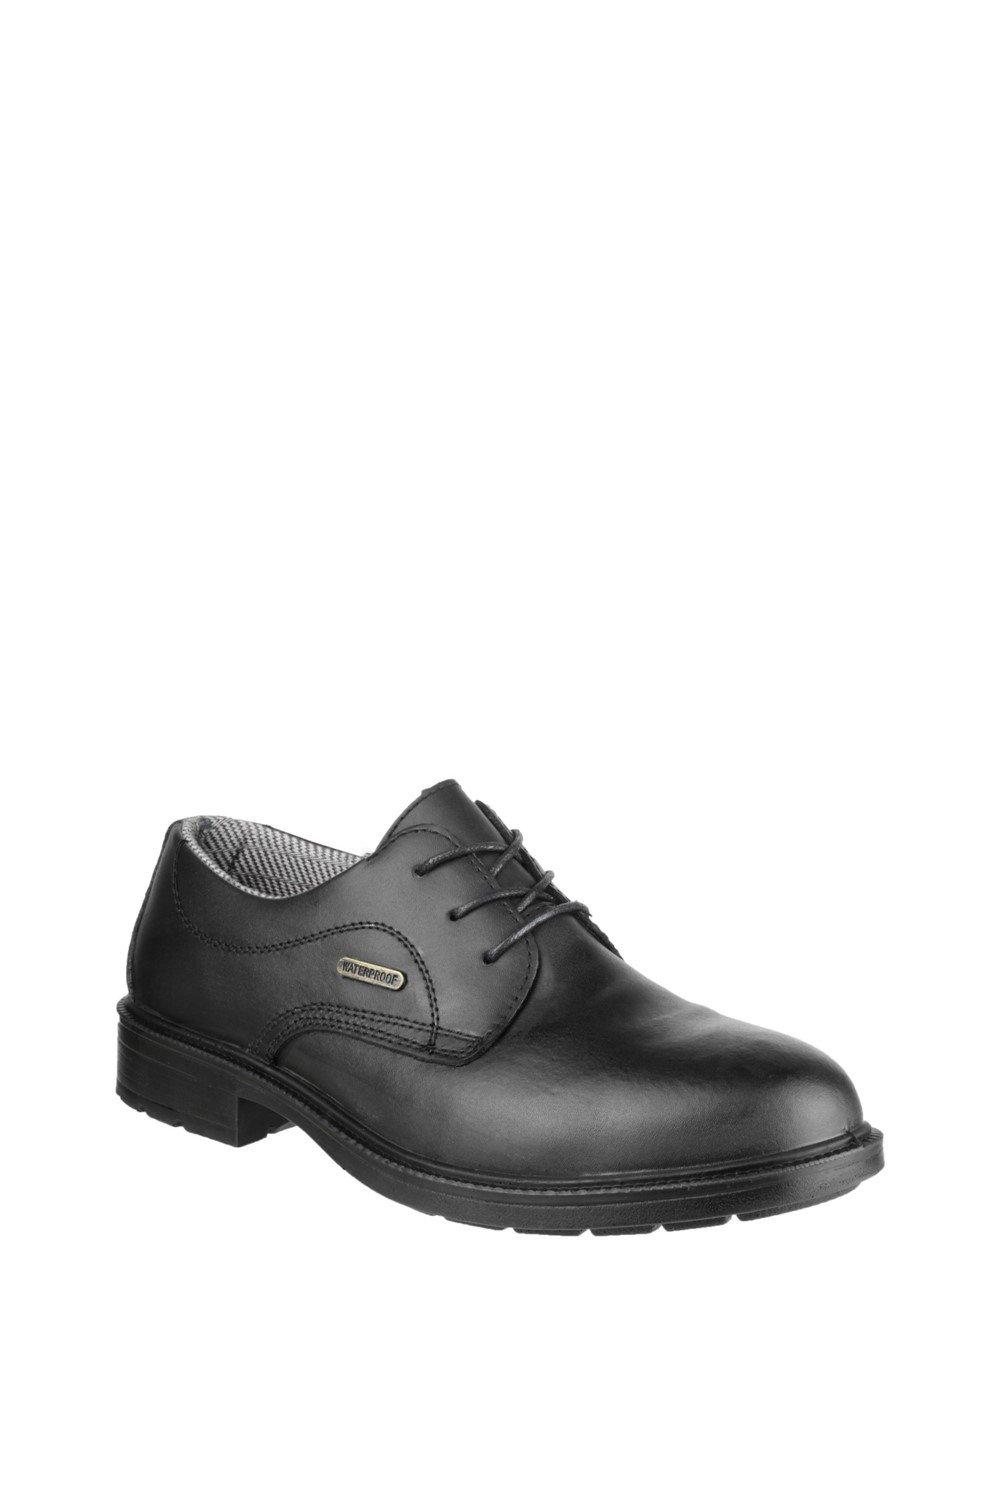 цена Защитная обувь 'FS62' Amblers Safety, черный